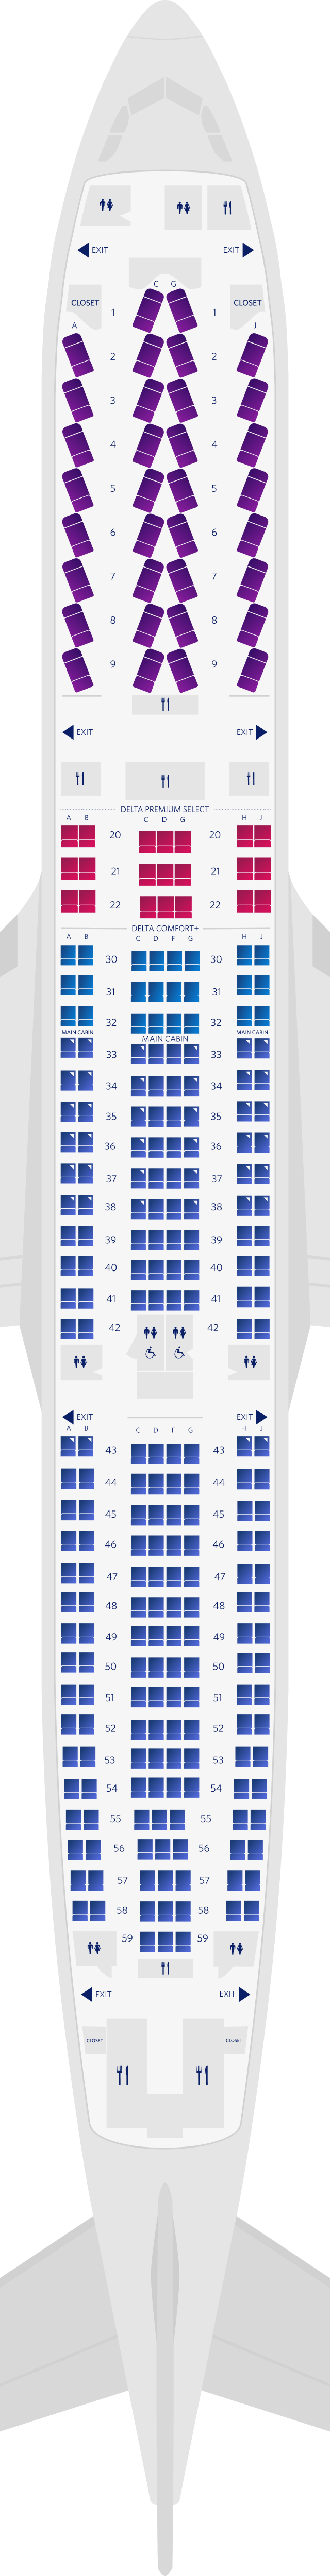 Mapa de assentos do Airbus A330-300 com 4 cabines (3M3)